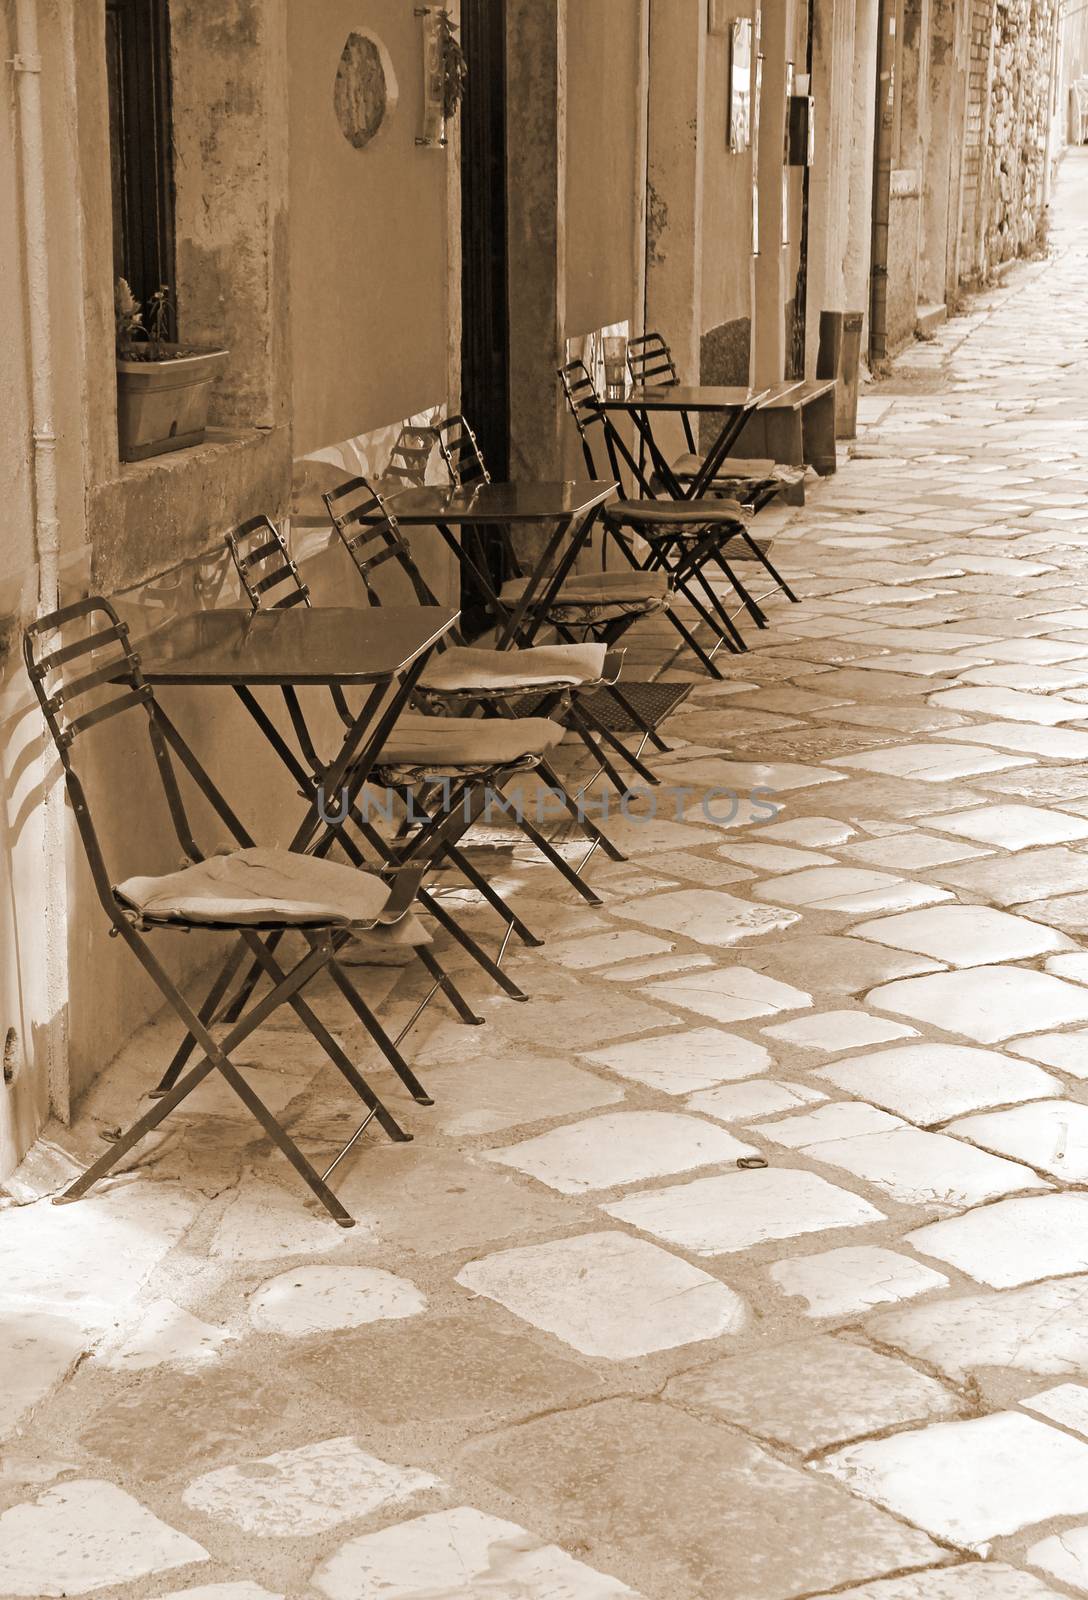 Greece. Corfu (Kerkyra) island. Corfu town. An open-air cafe. In Sepia toned. Retro style  